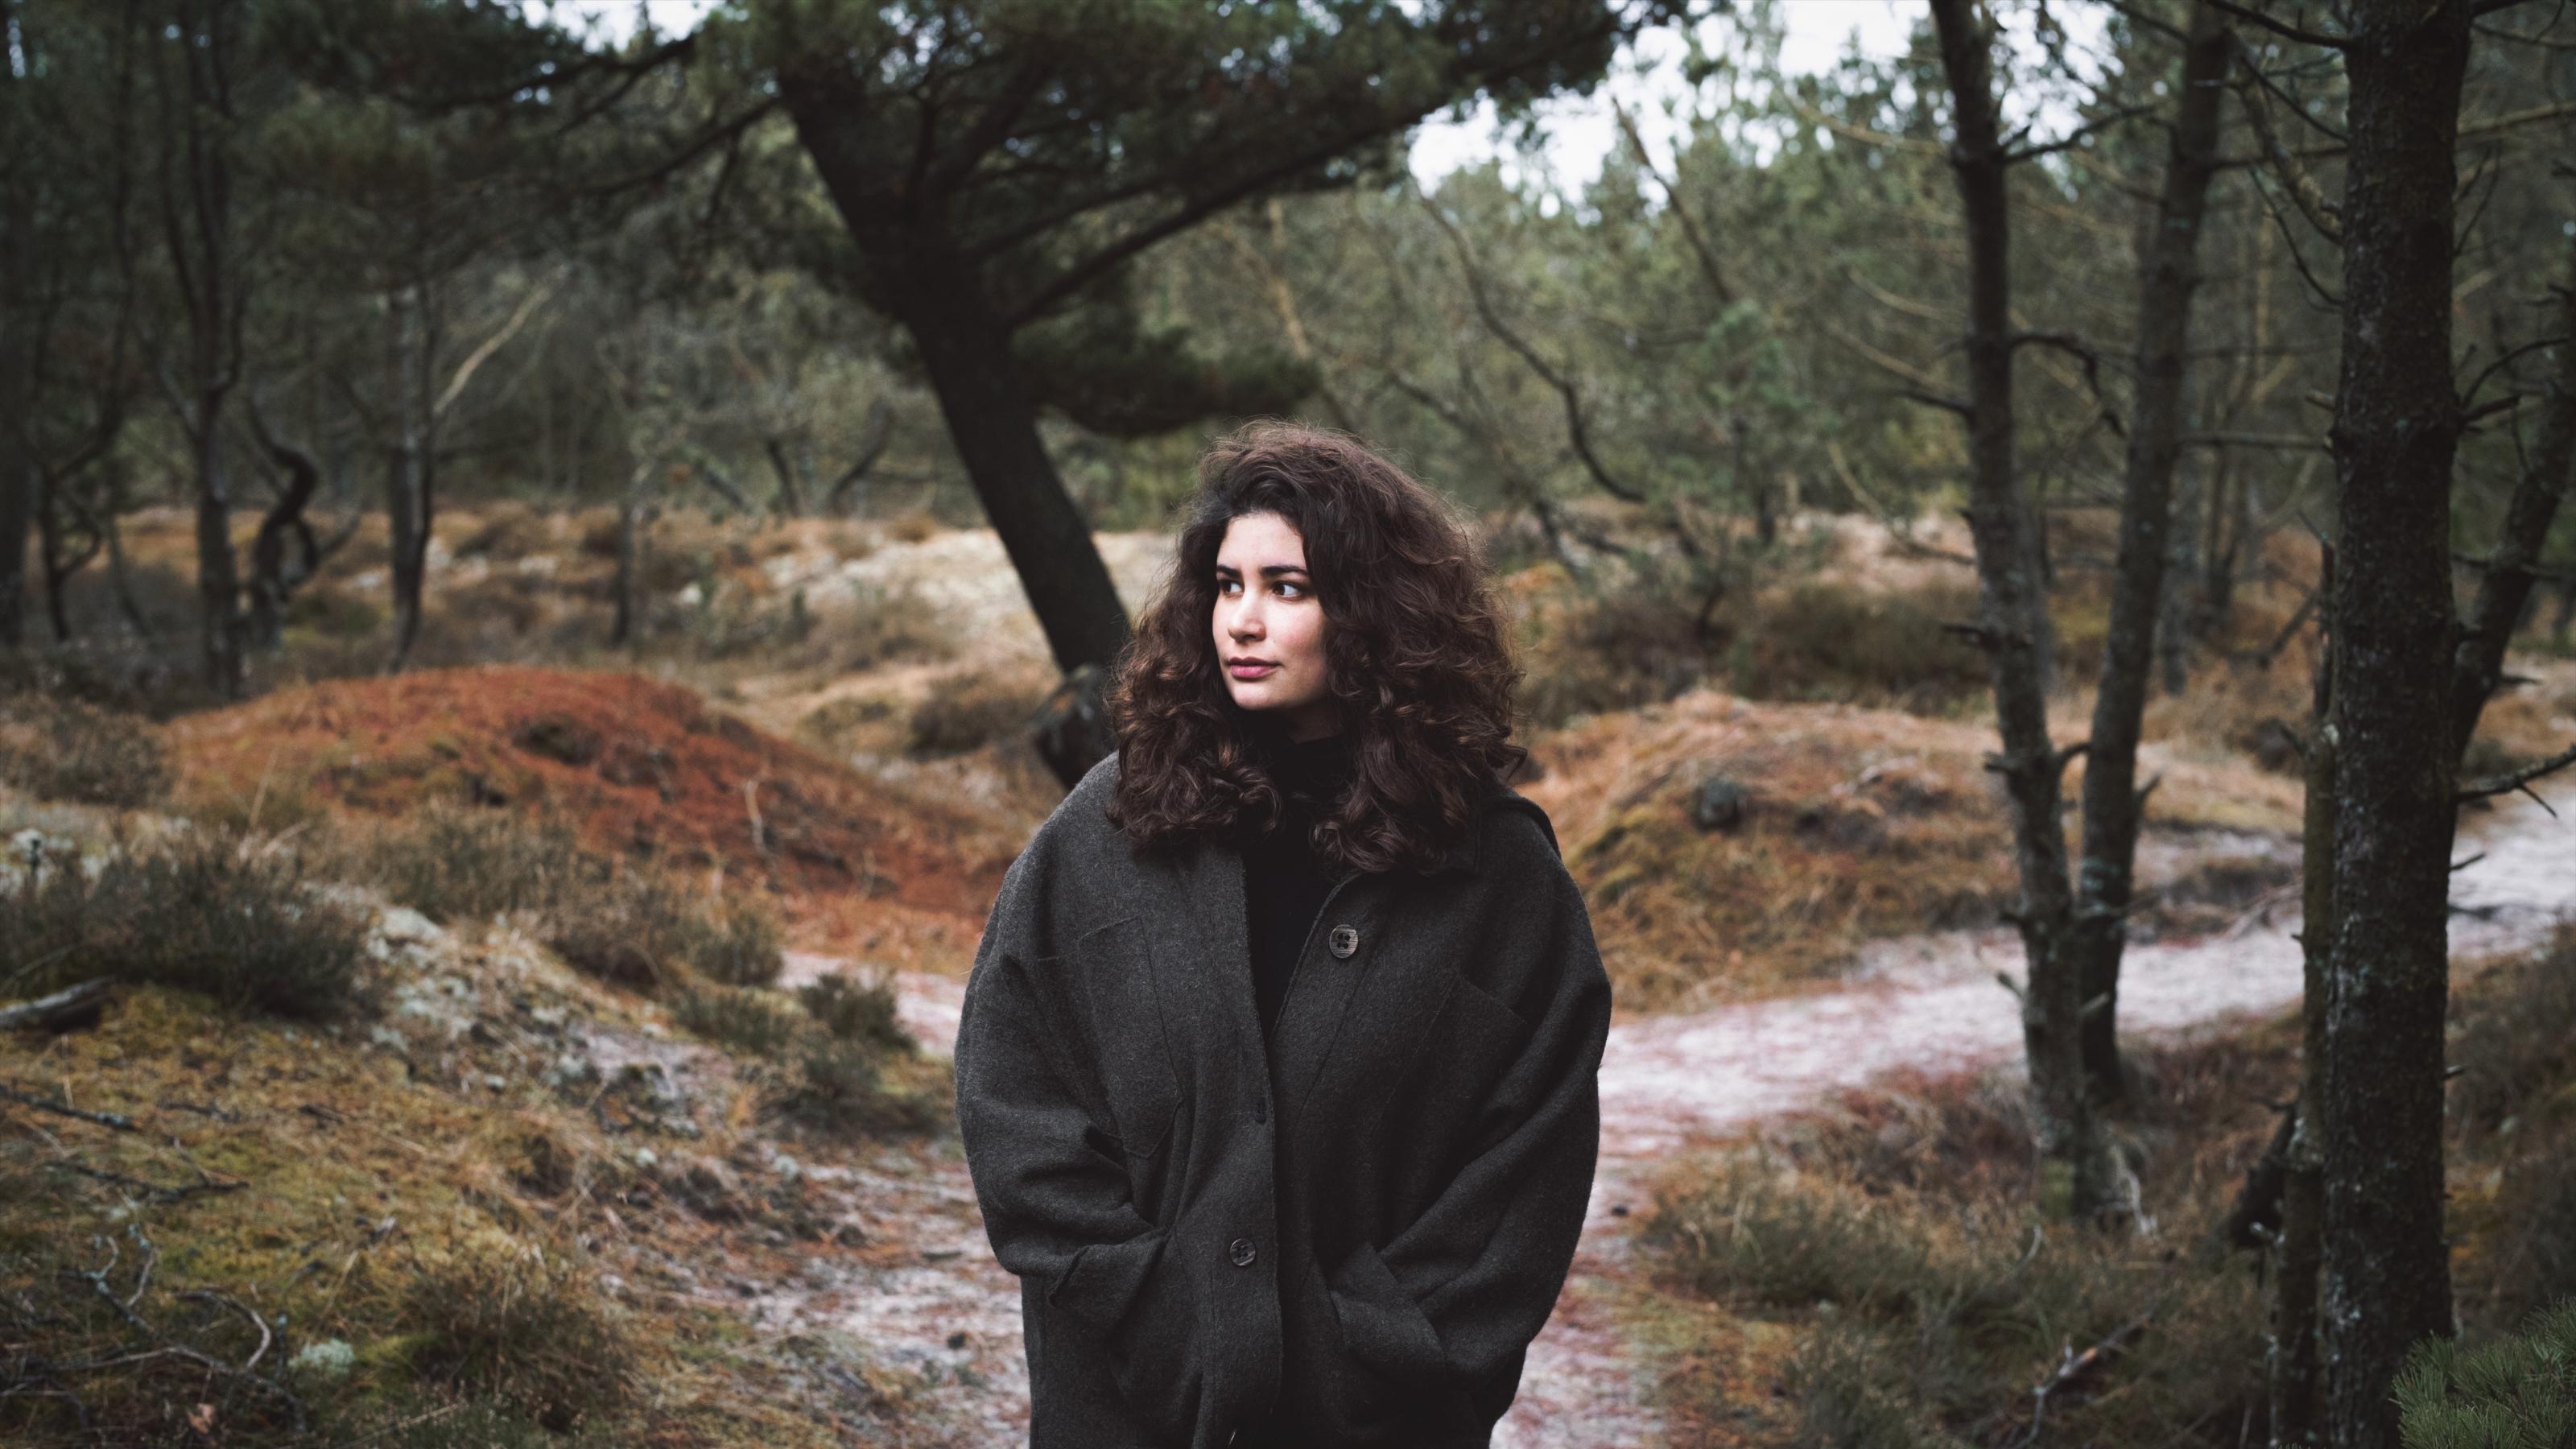 Zu sehen ist eine Frau mit dunklen, langen Locken – die Autorin Jasmin Schreiber -, die auf einem Waldweg steht. Um sie herum stehen Bäume.